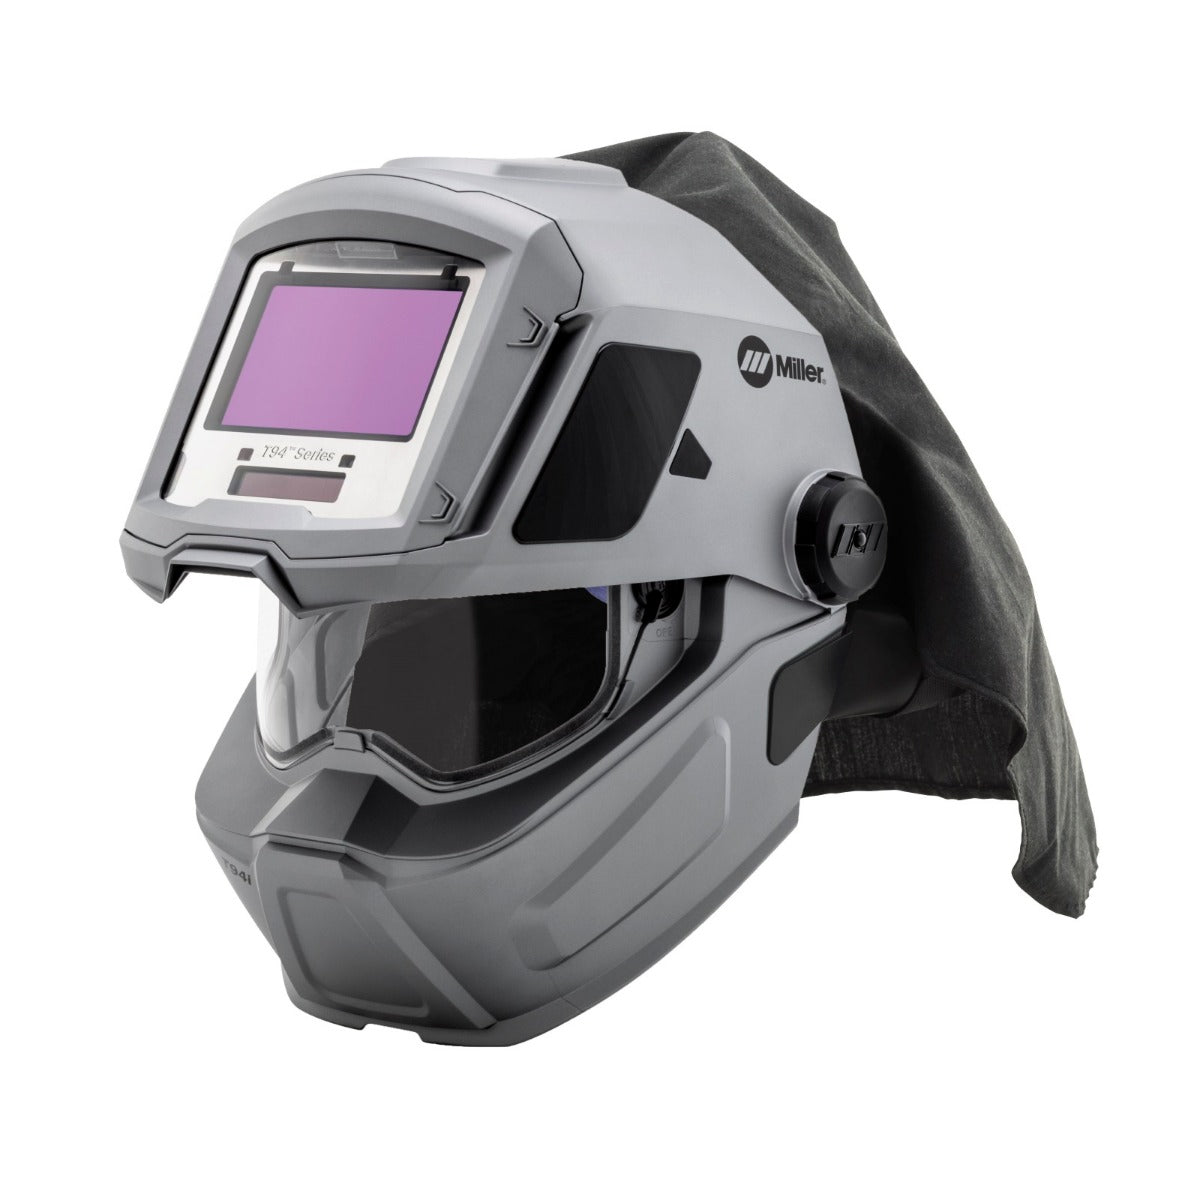 Miller T94i-R PAPR Helmet Upgrade Kit (279871)